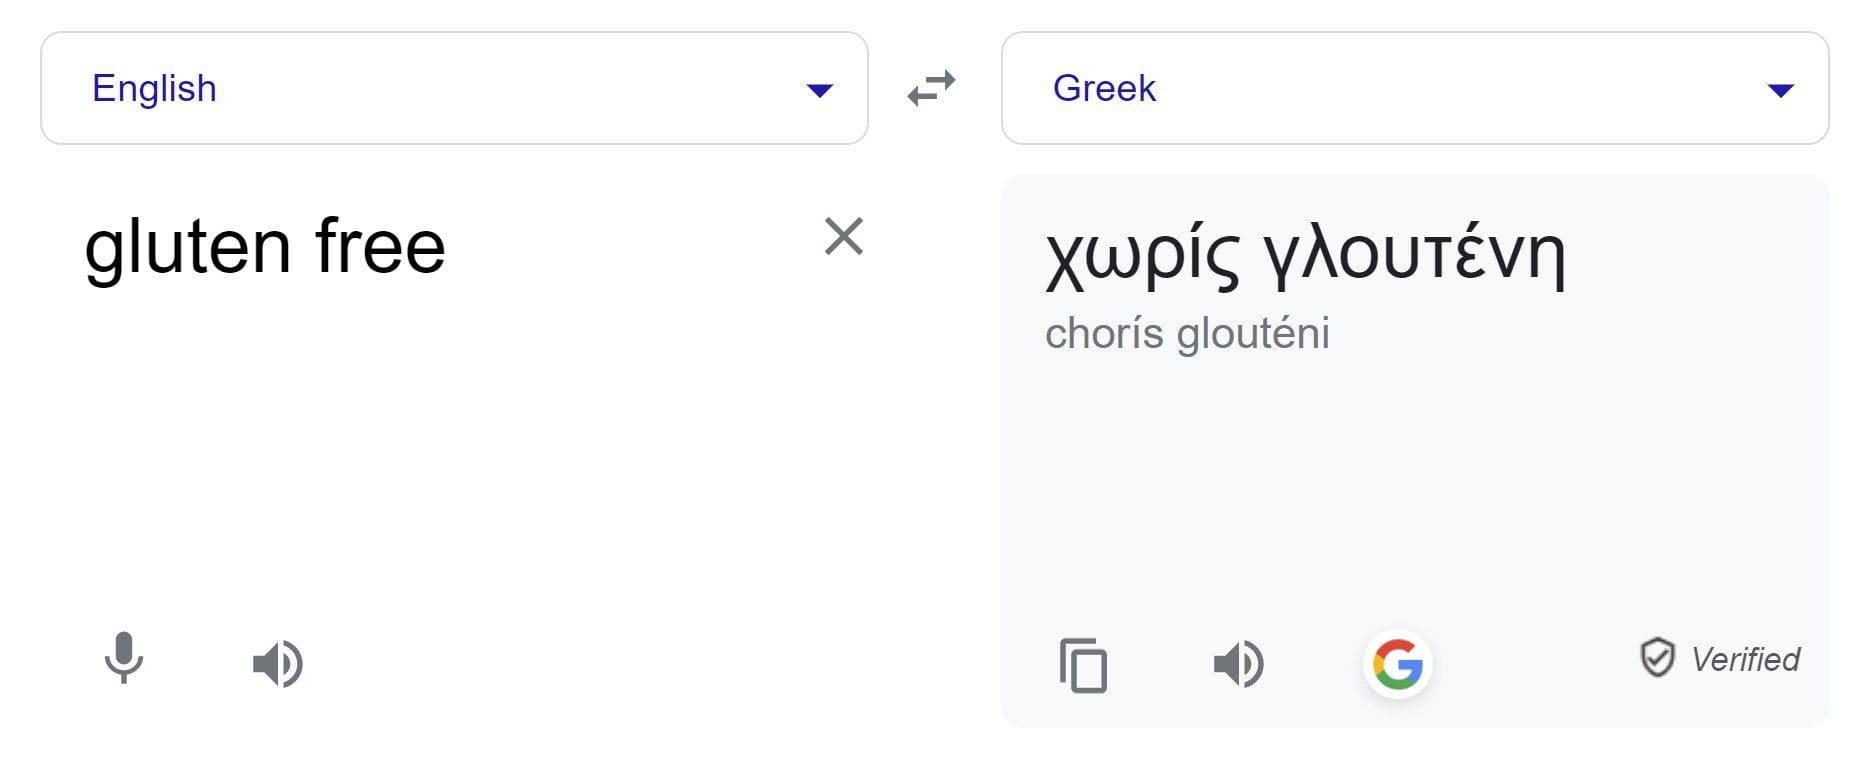 gluten free Greek translation